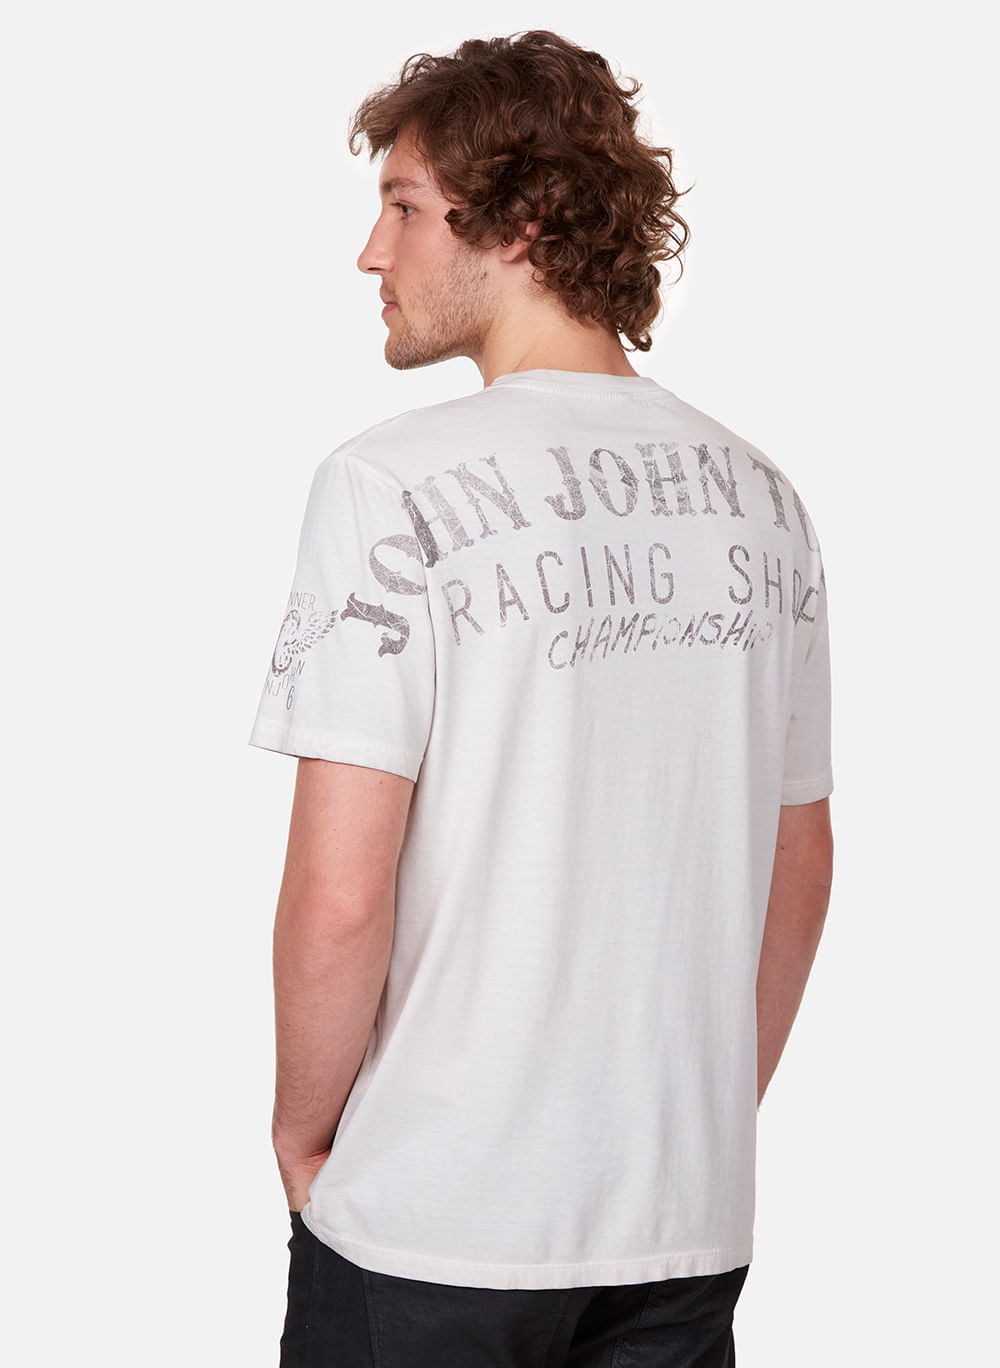 Camiseta Slim Fit Foil John John Masculina - John John